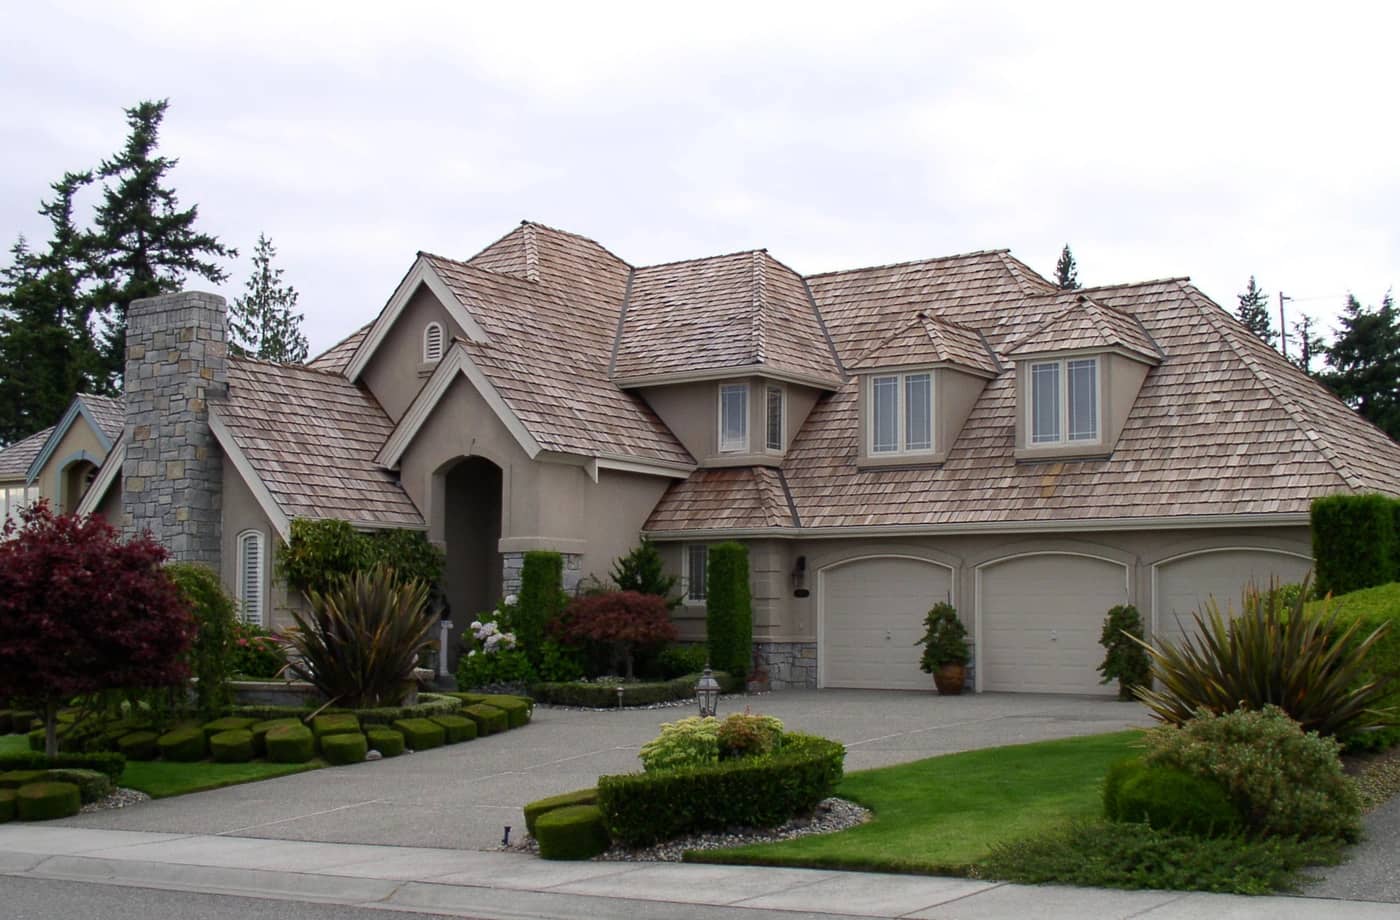 Large residential home in need of cedar shake roof repair